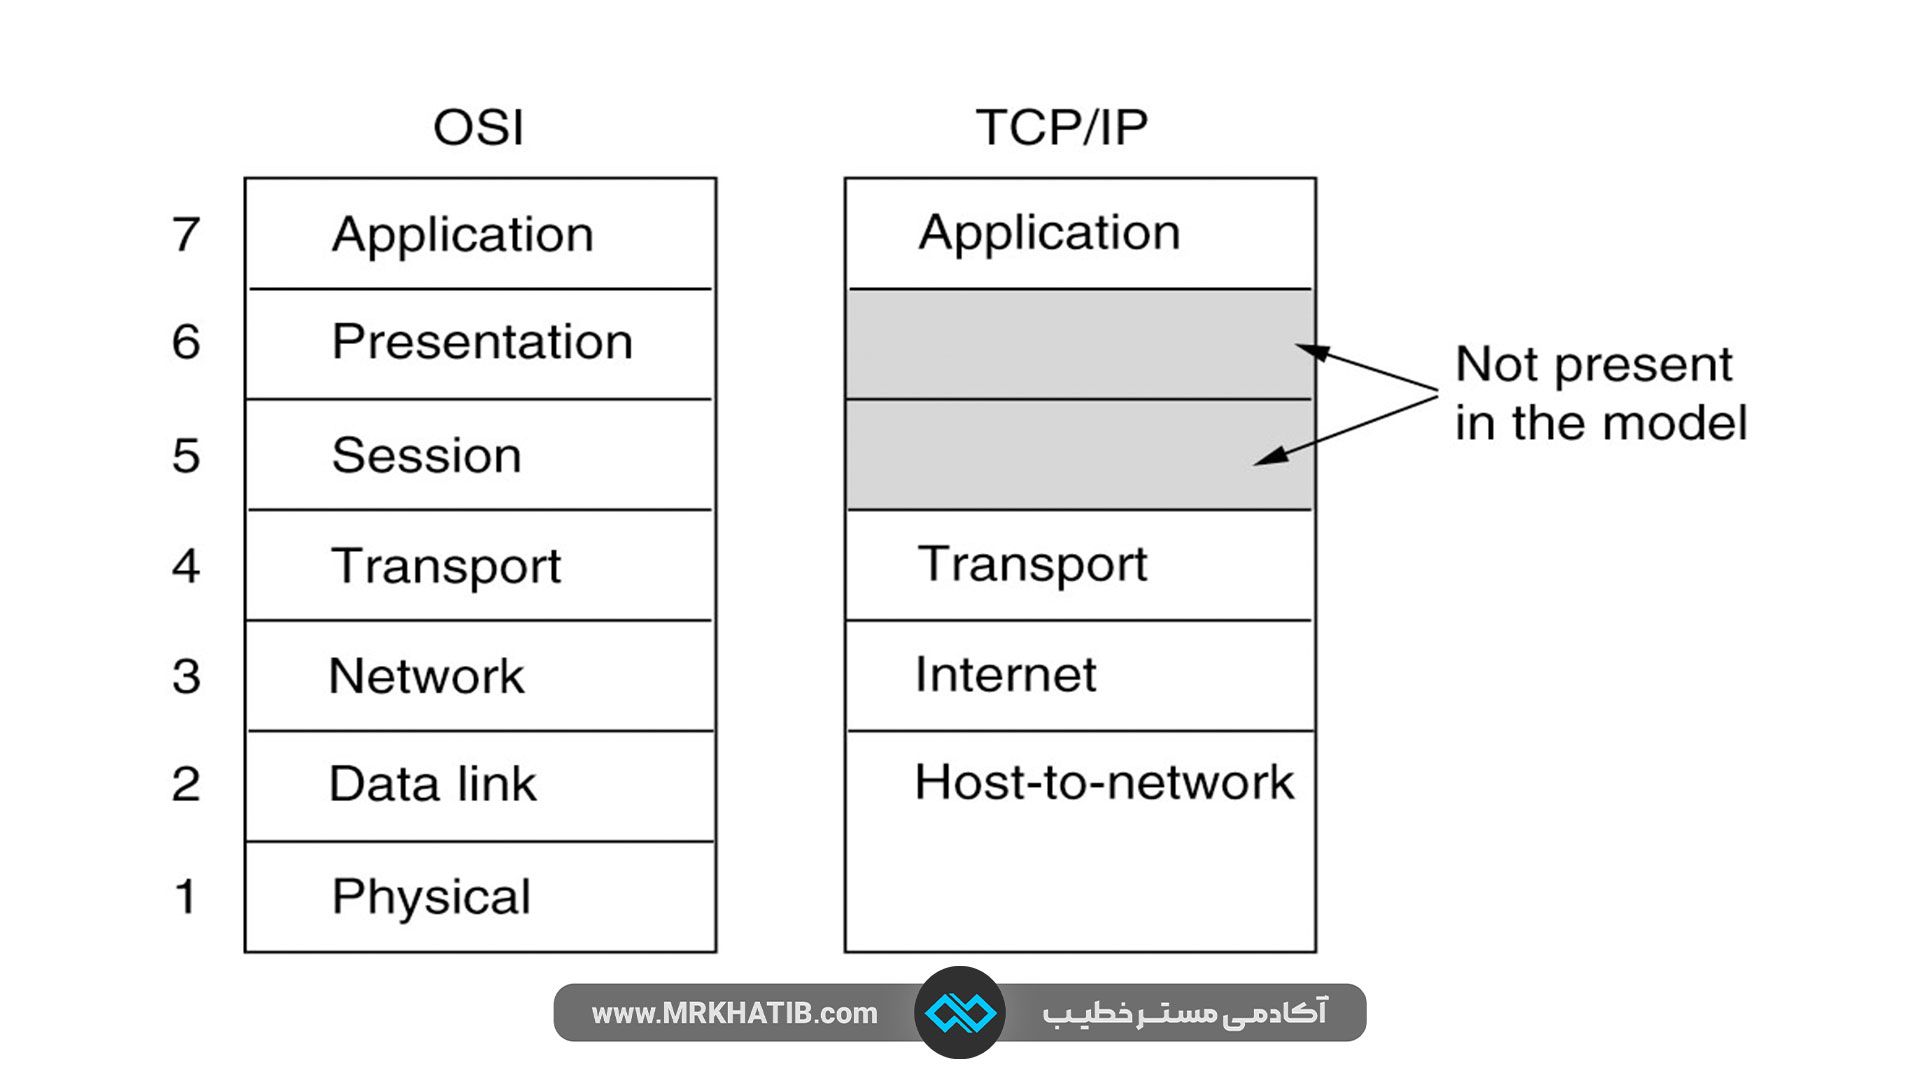 مدل OSI در مقابل مدل TCP/IP